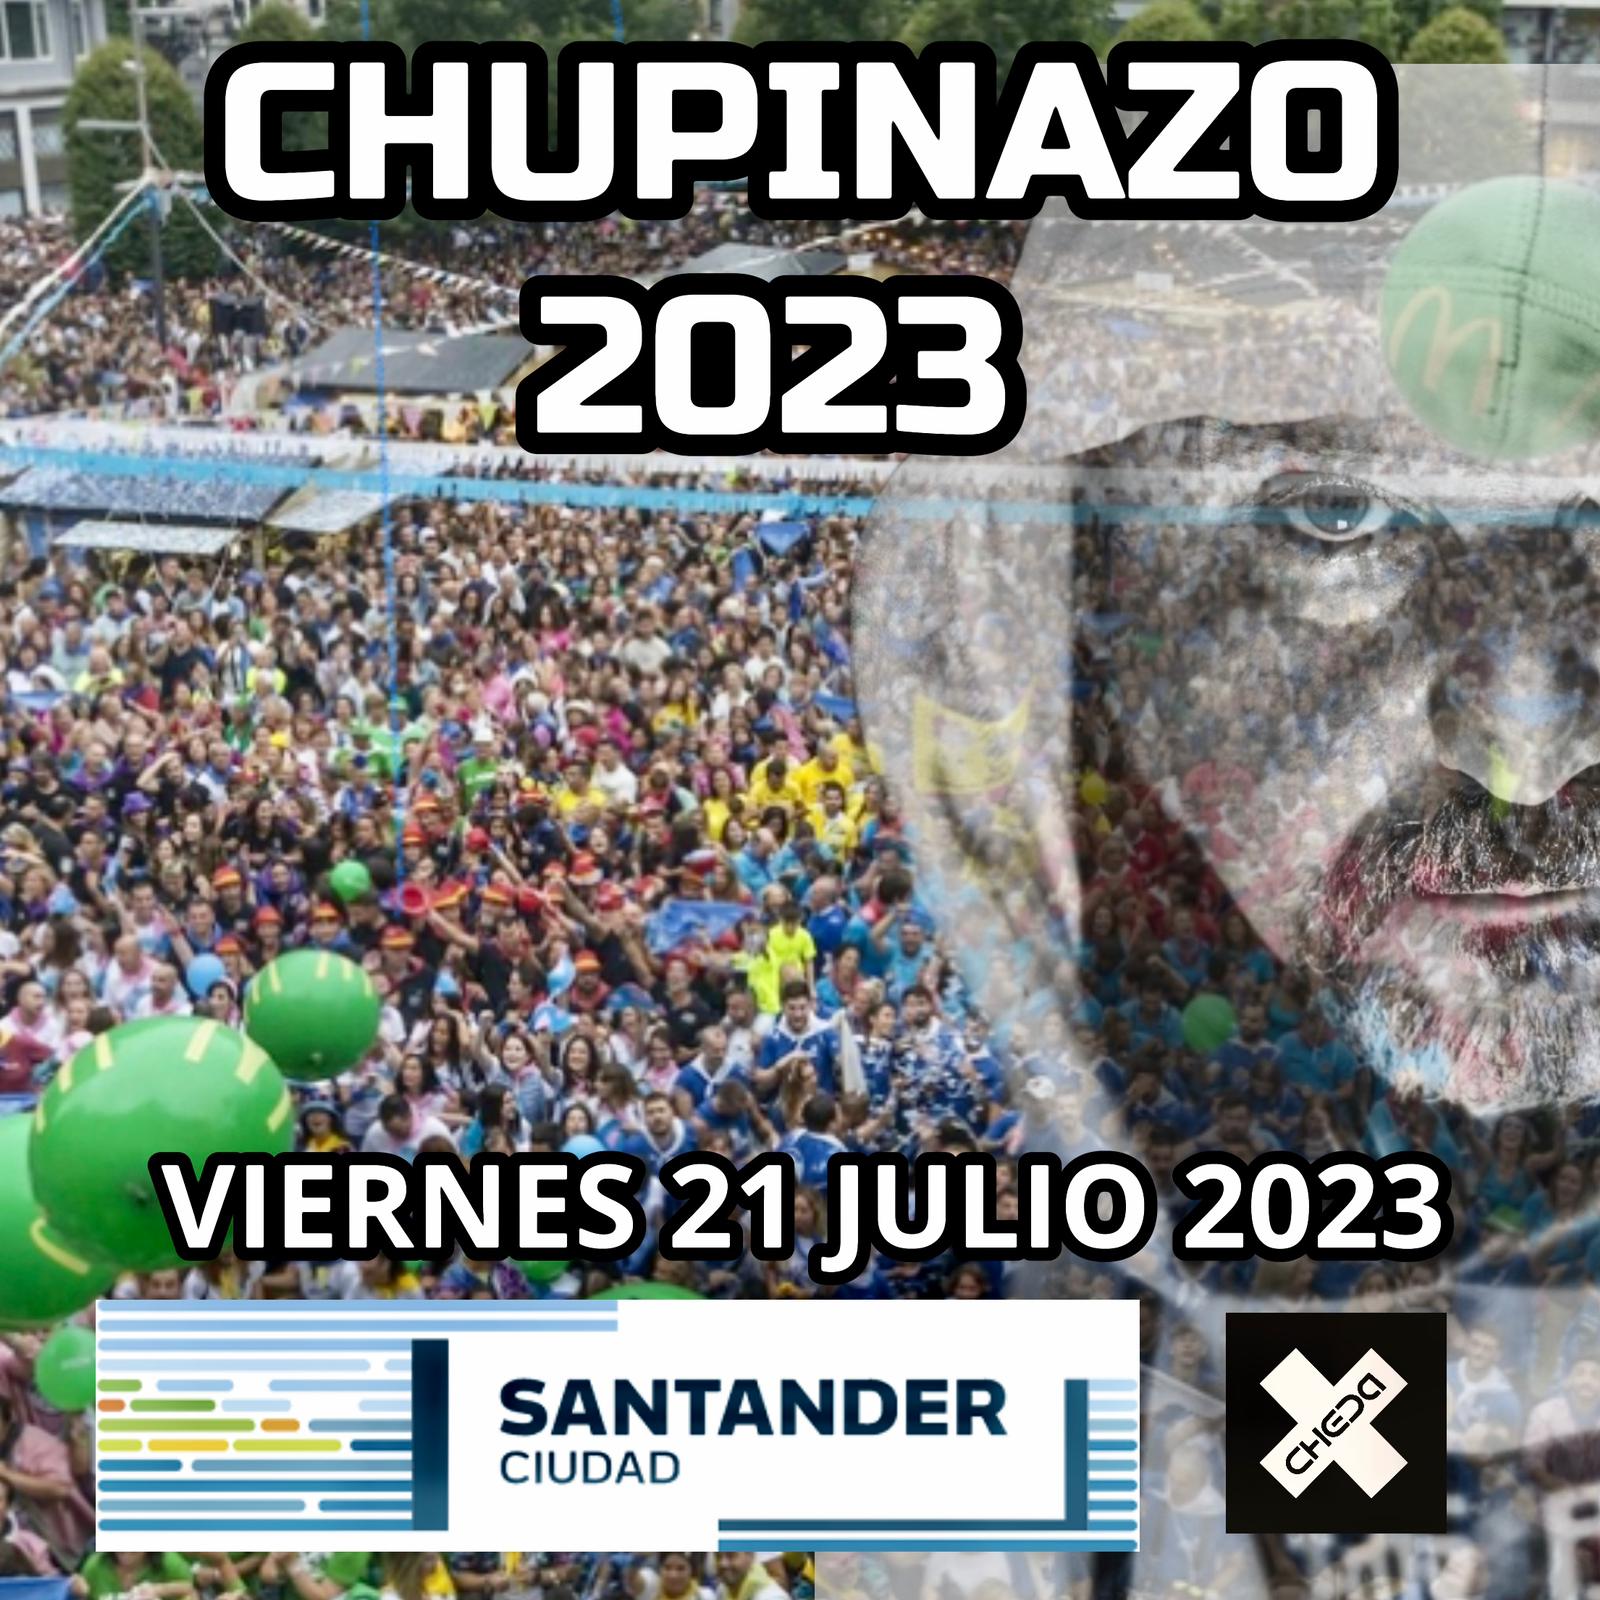 Chupinazo Santander 2023